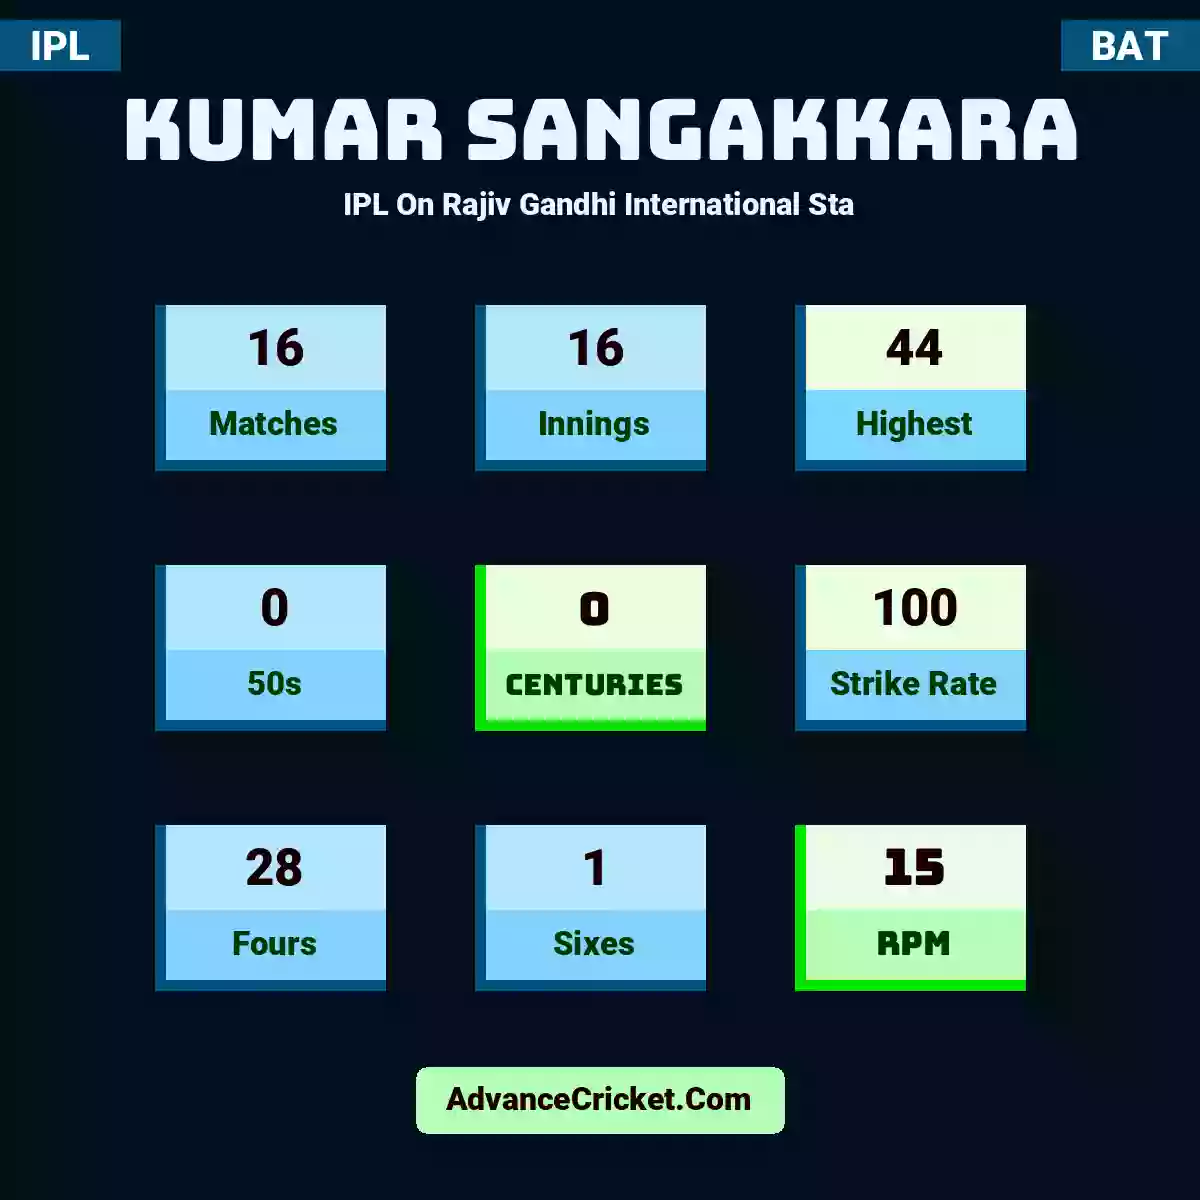 Kumar Sangakkara IPL  On Rajiv Gandhi International Sta, Kumar Sangakkara played 16 matches, scored 44 runs as highest, 0 half-centuries, and 0 centuries, with a strike rate of 100. K.Sangakkara hit 28 fours and 1 sixes, with an RPM of 15.